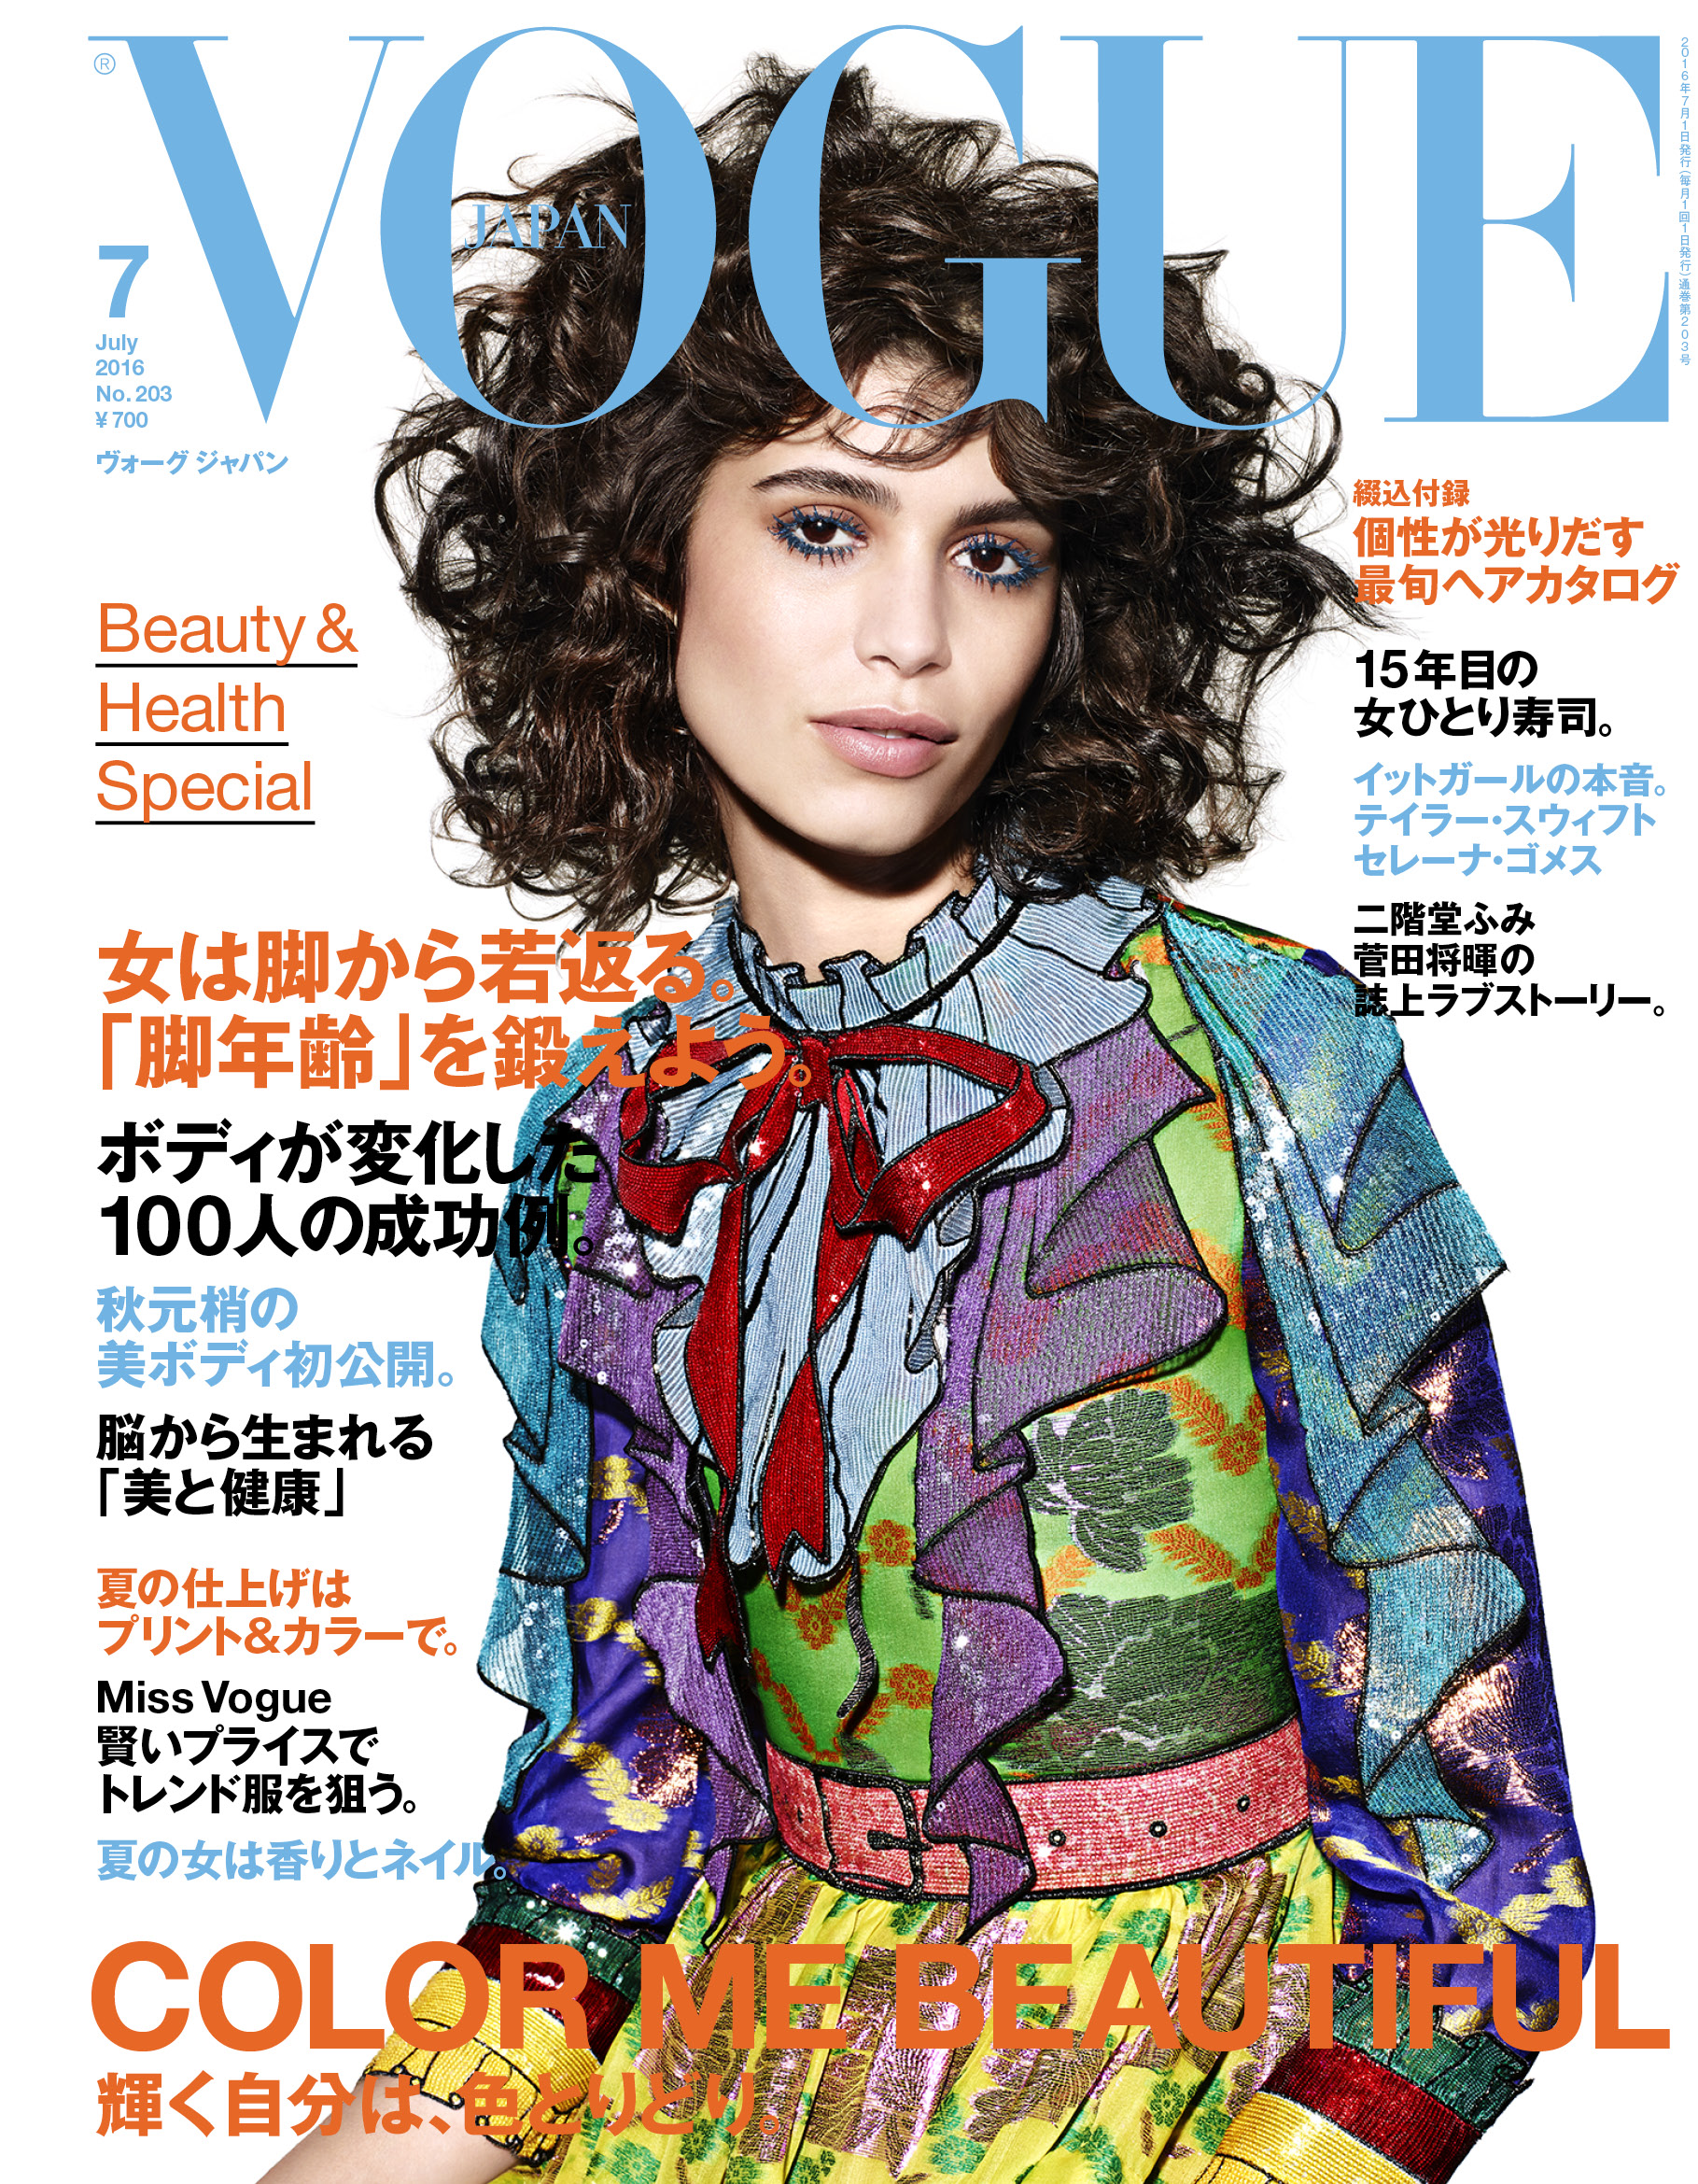 Vogue Japan 7月号 自分に合った 最強の美脚 でエイジレスに美しくなる 綴込付録は個性が光りだす最旬ヘアカタログ コンデナスト ジャパンのプレスリリース